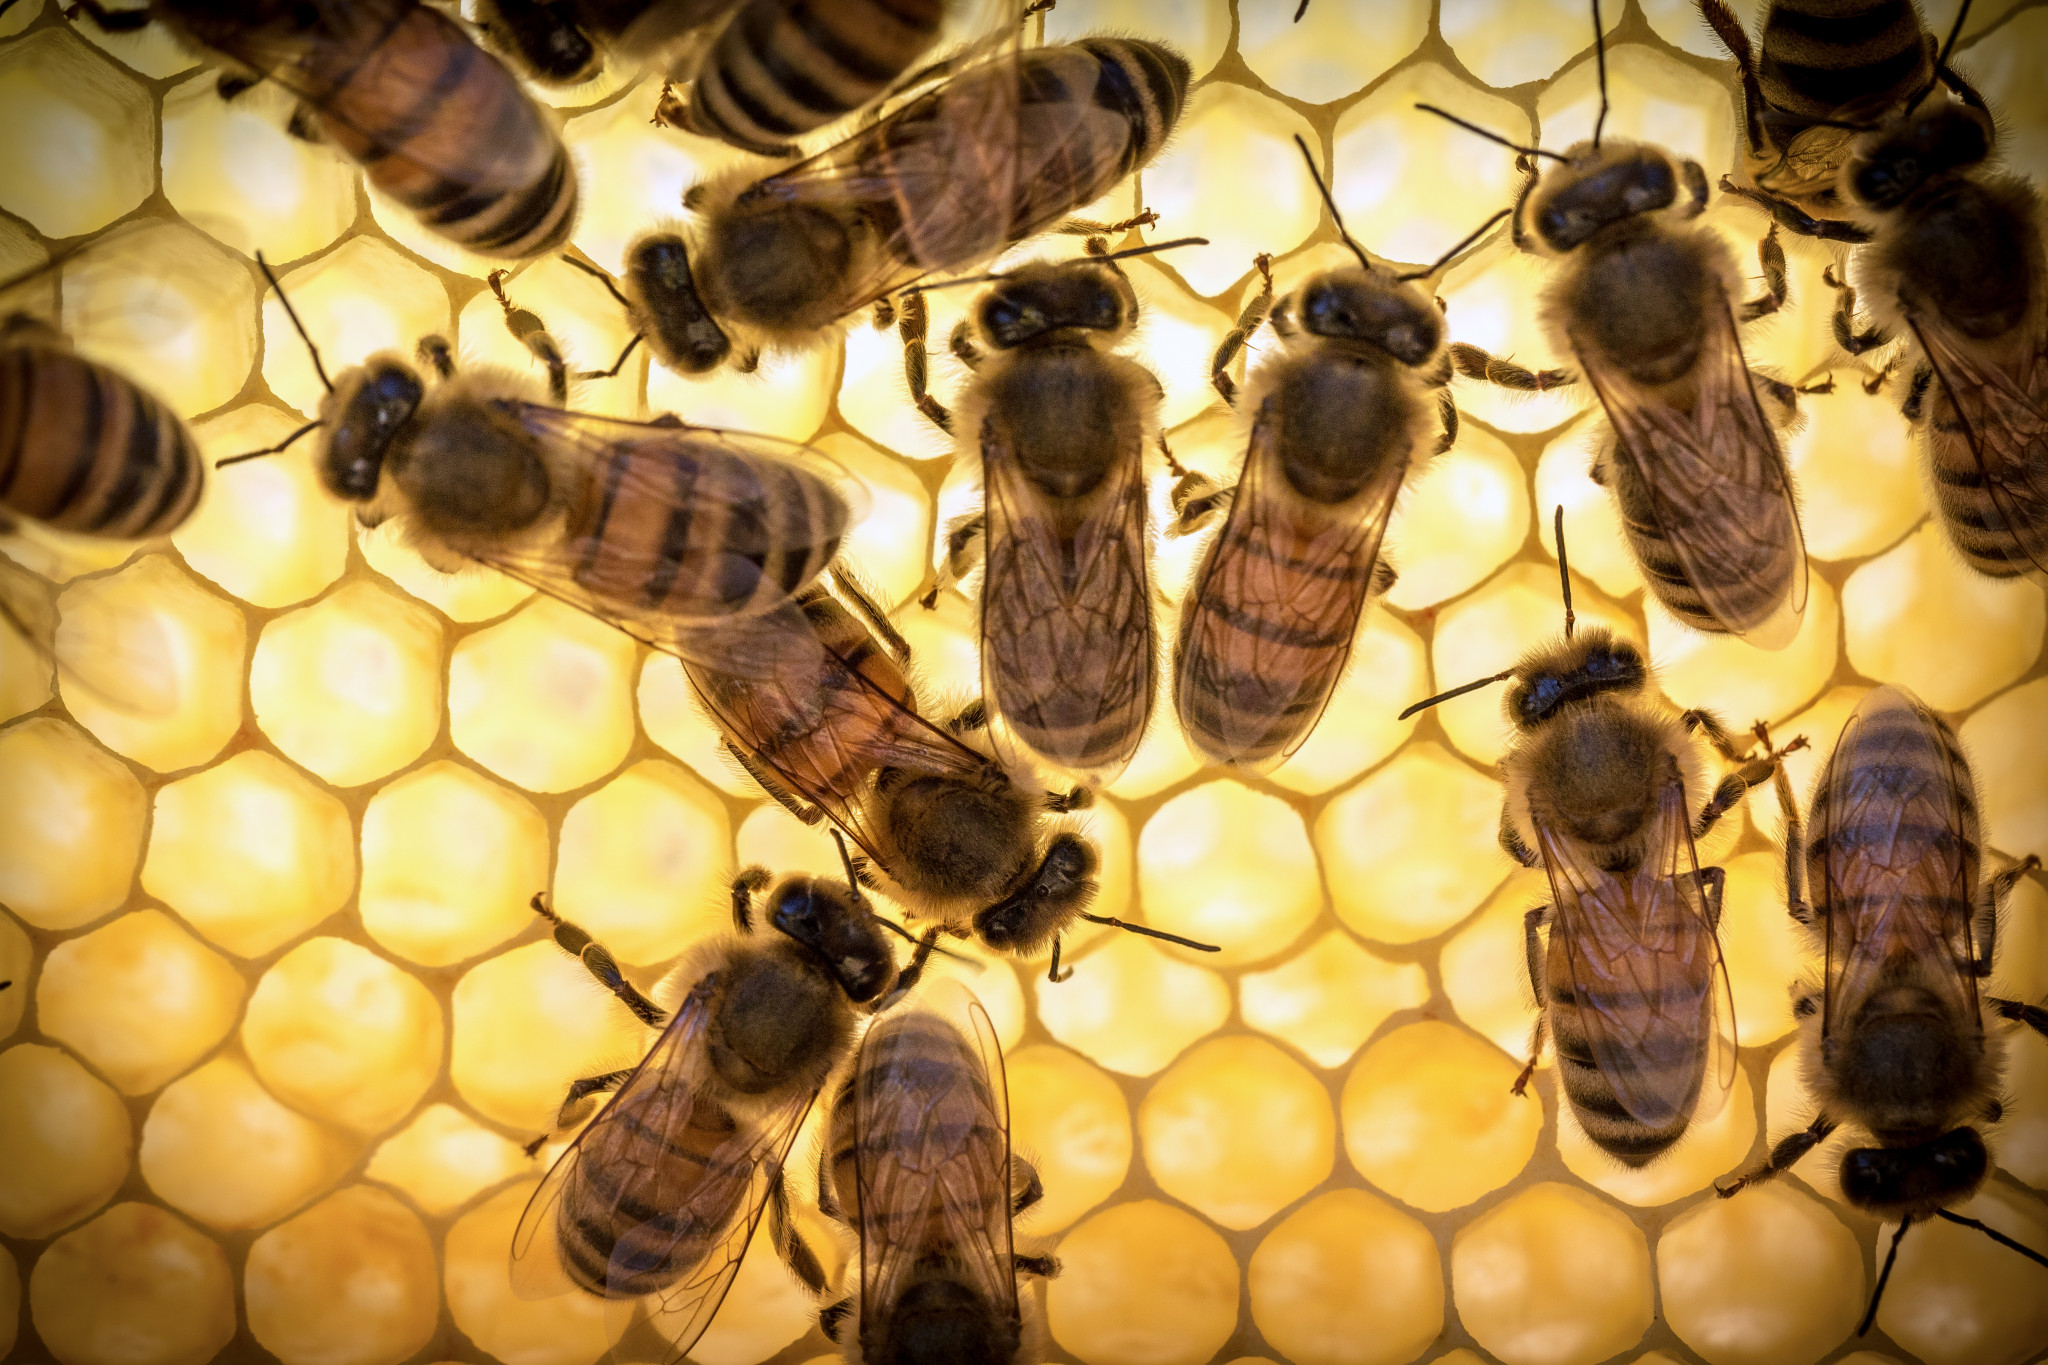 Bee királyi zselé nem ajánlott éjszaka használni, mivel befolyása alatt növeli az idegrendszert és az esetleges álmatlanságot